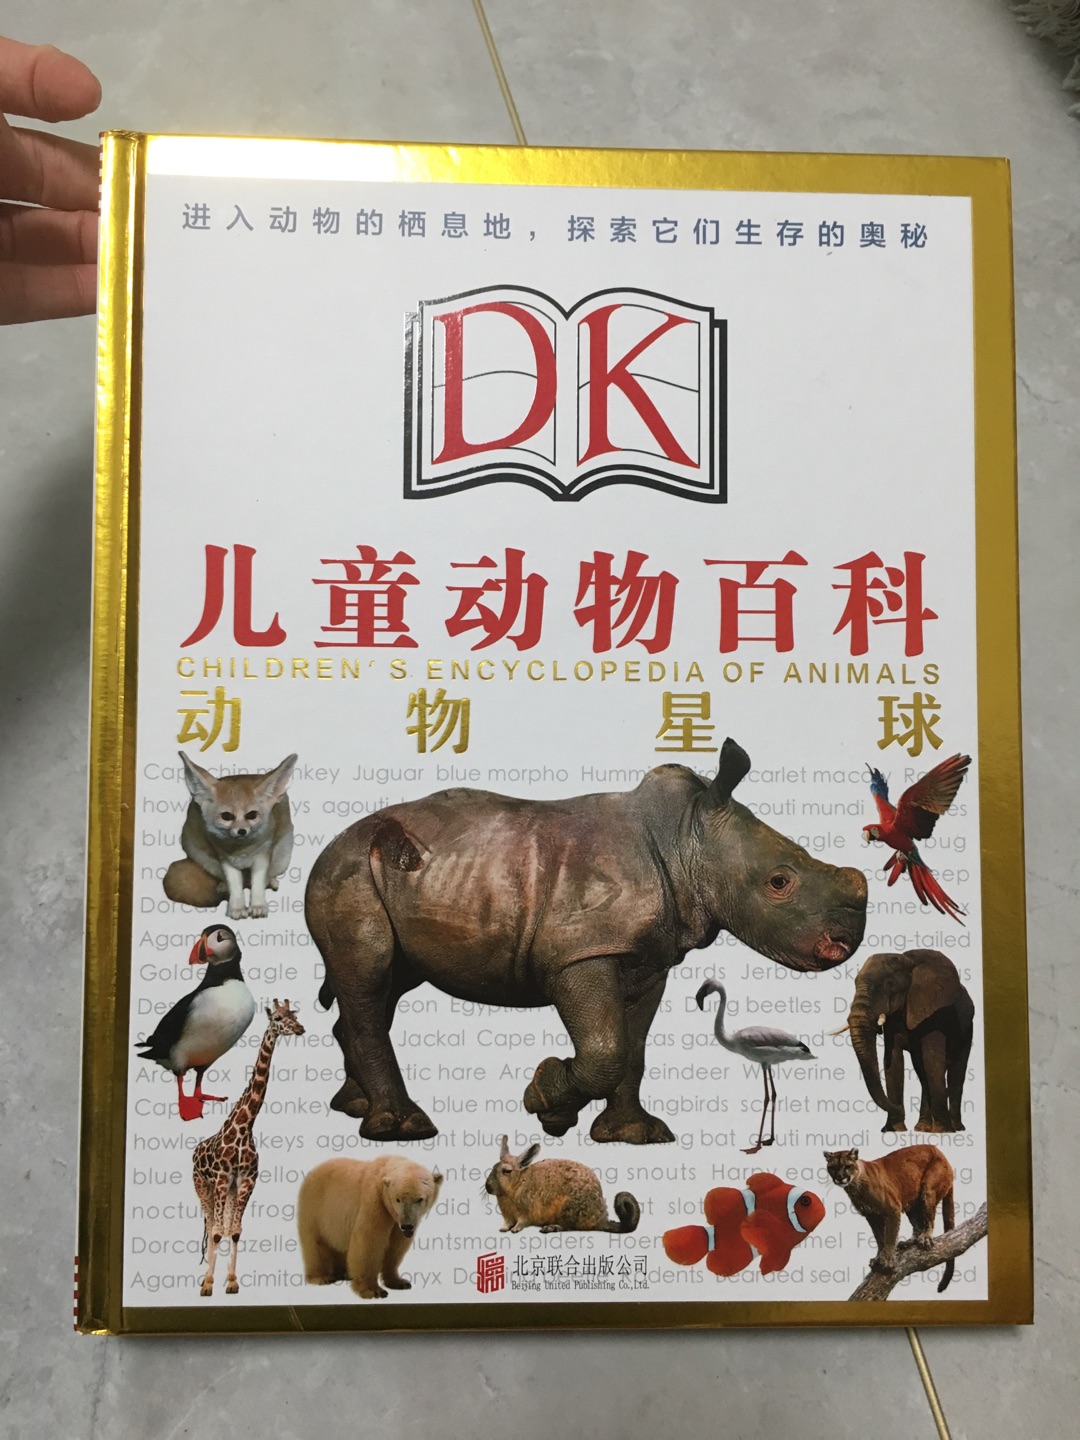 很好的一套书，虽然家里已经有dk的一套百科，一开始担心儿童动物百科和儿童百科跟那套是重复的，但是描述的角度不太一样，各有所长！关键活动入的够便宜呀